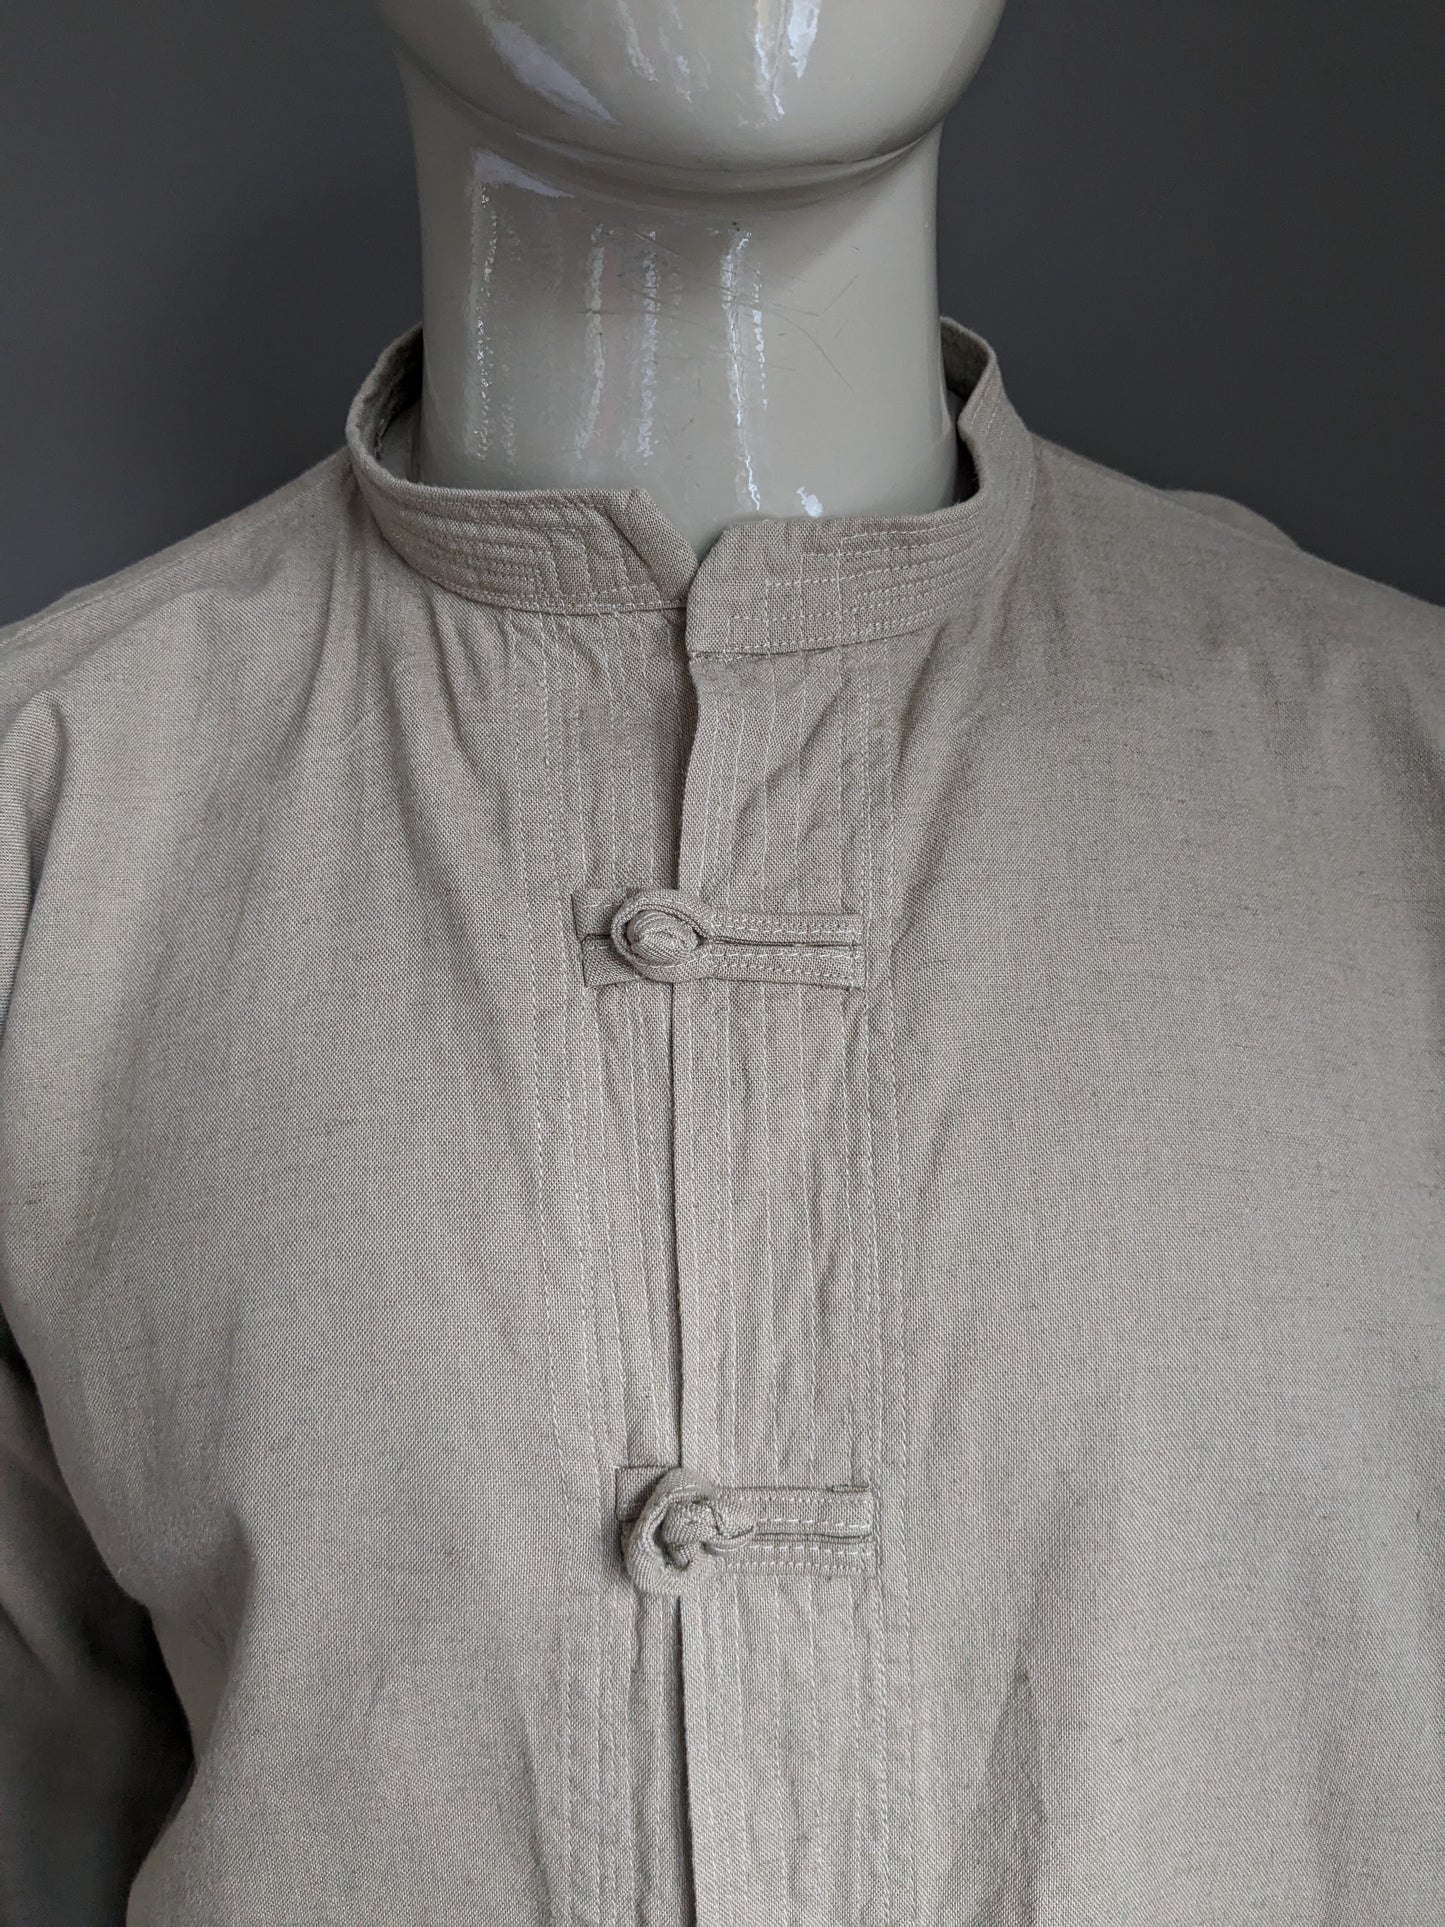 Chemise vintage avec boutons en tissu et collier mao / surélevé / agriculteur. Coloré beige. Taille 2xl / xxl.